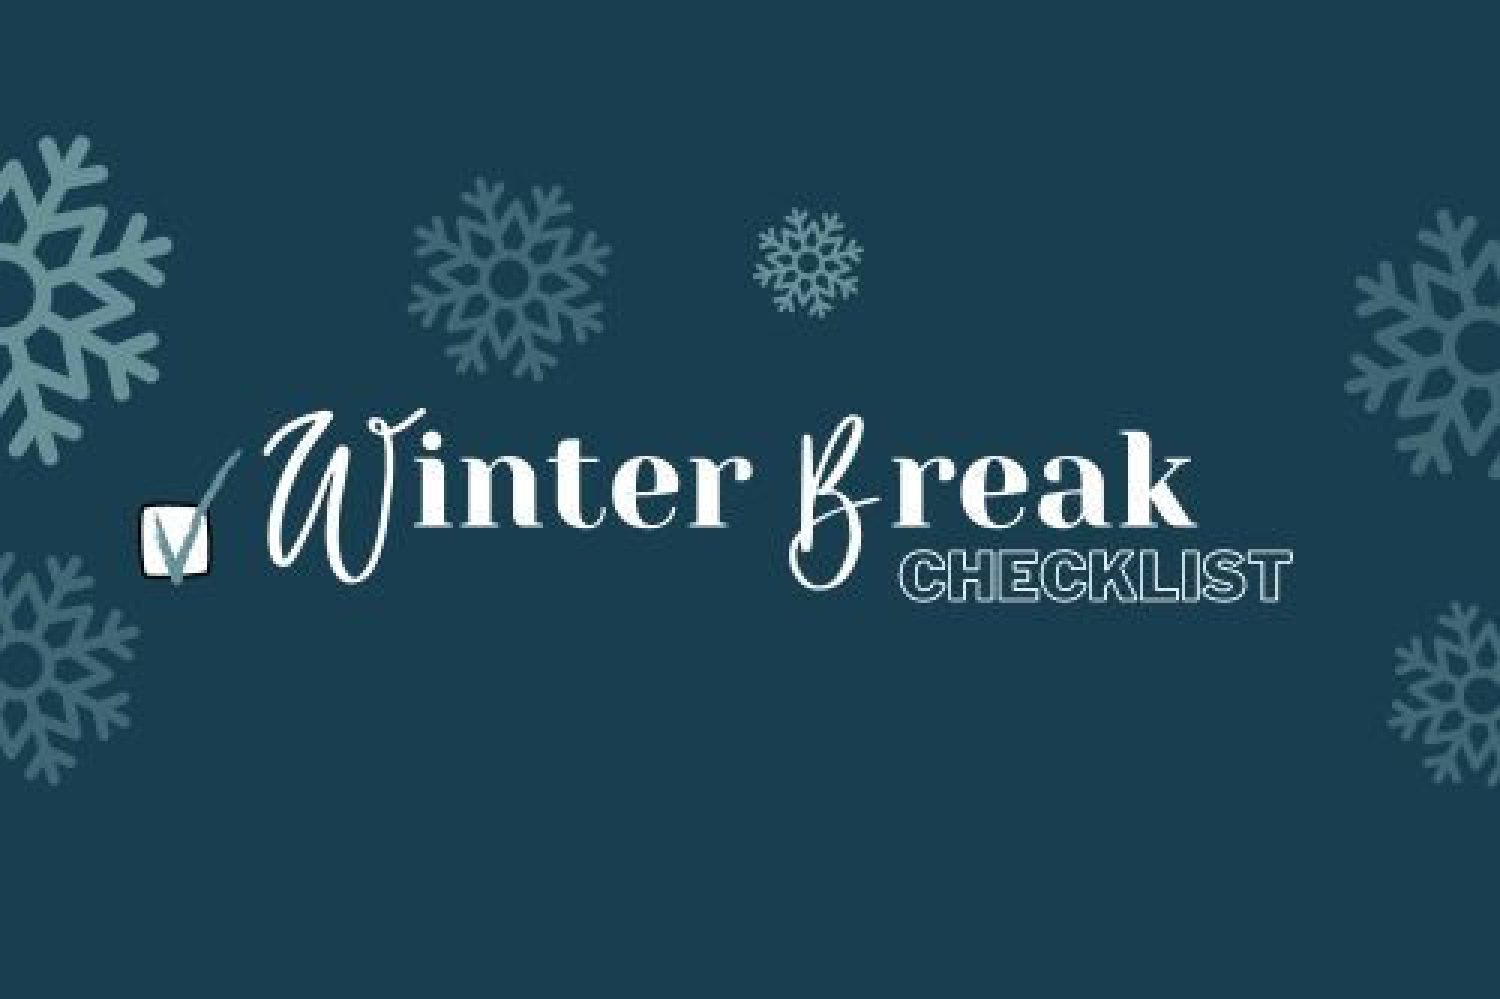 Winter Break Challenge